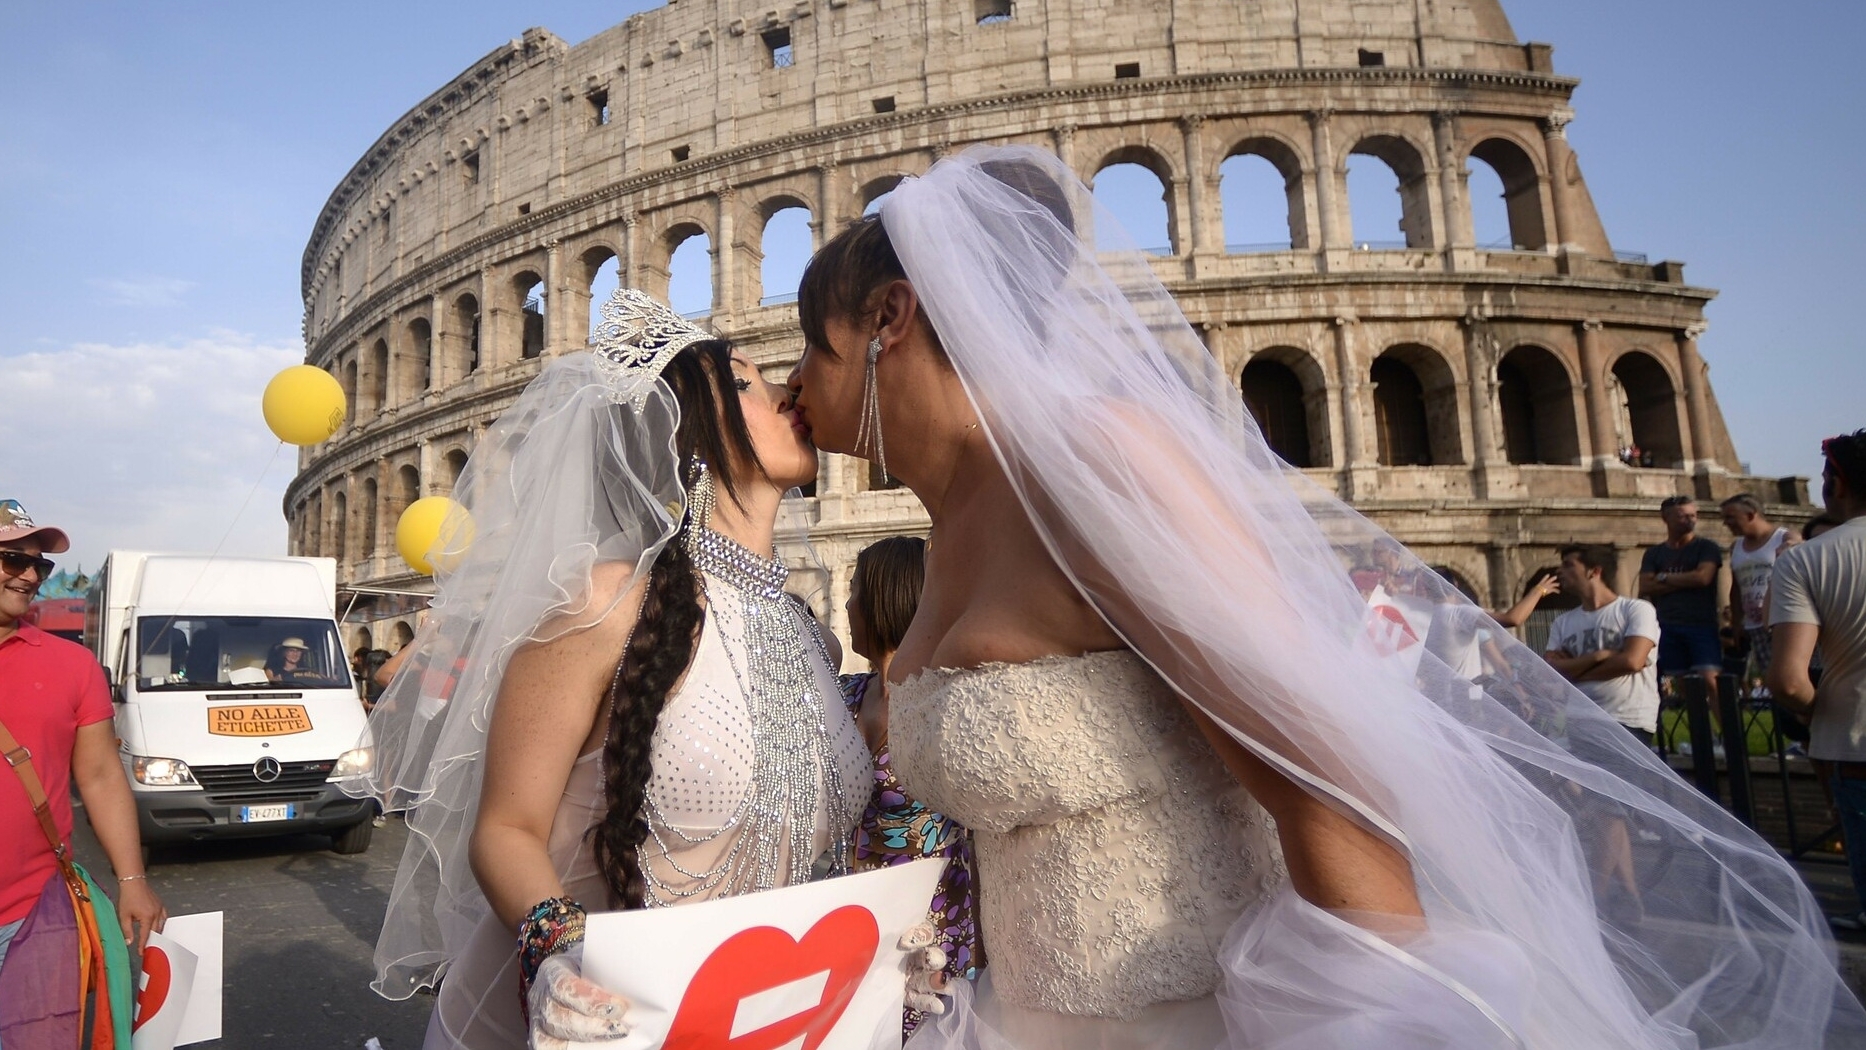 Італійцям не дозволяють реєструвати іноземні свідоцтва про народження дітей, народжених в одностатевих шлюбах